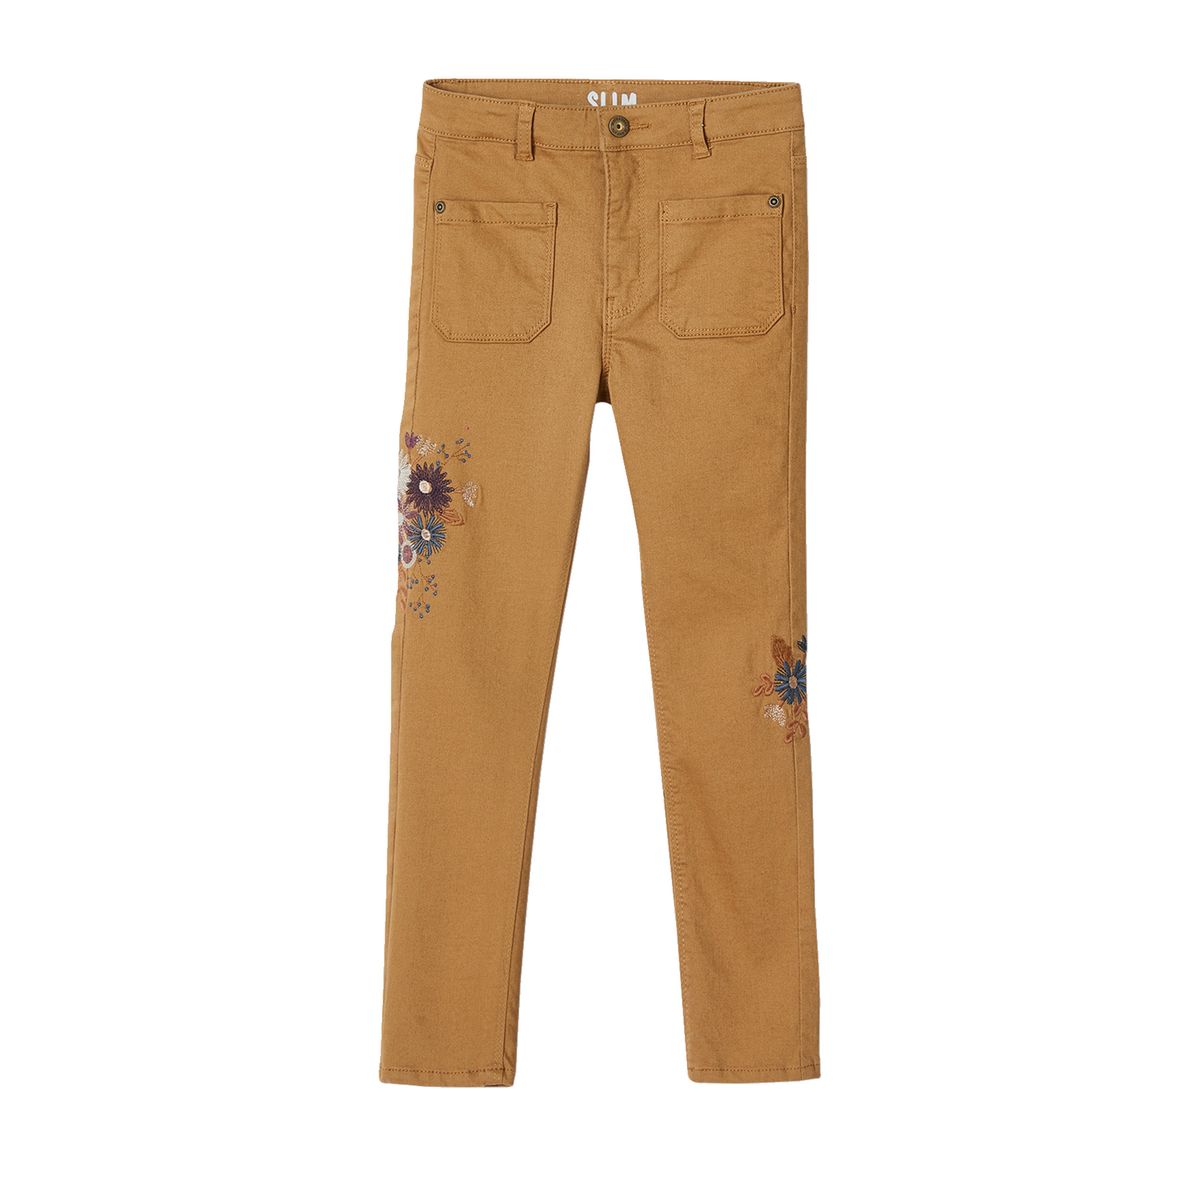 La Redoute Fille Vêtements Pantalons & Jeans Pantalons Pantalons Slim & Skinny Pantalon slim brodé fleurs taille haute 